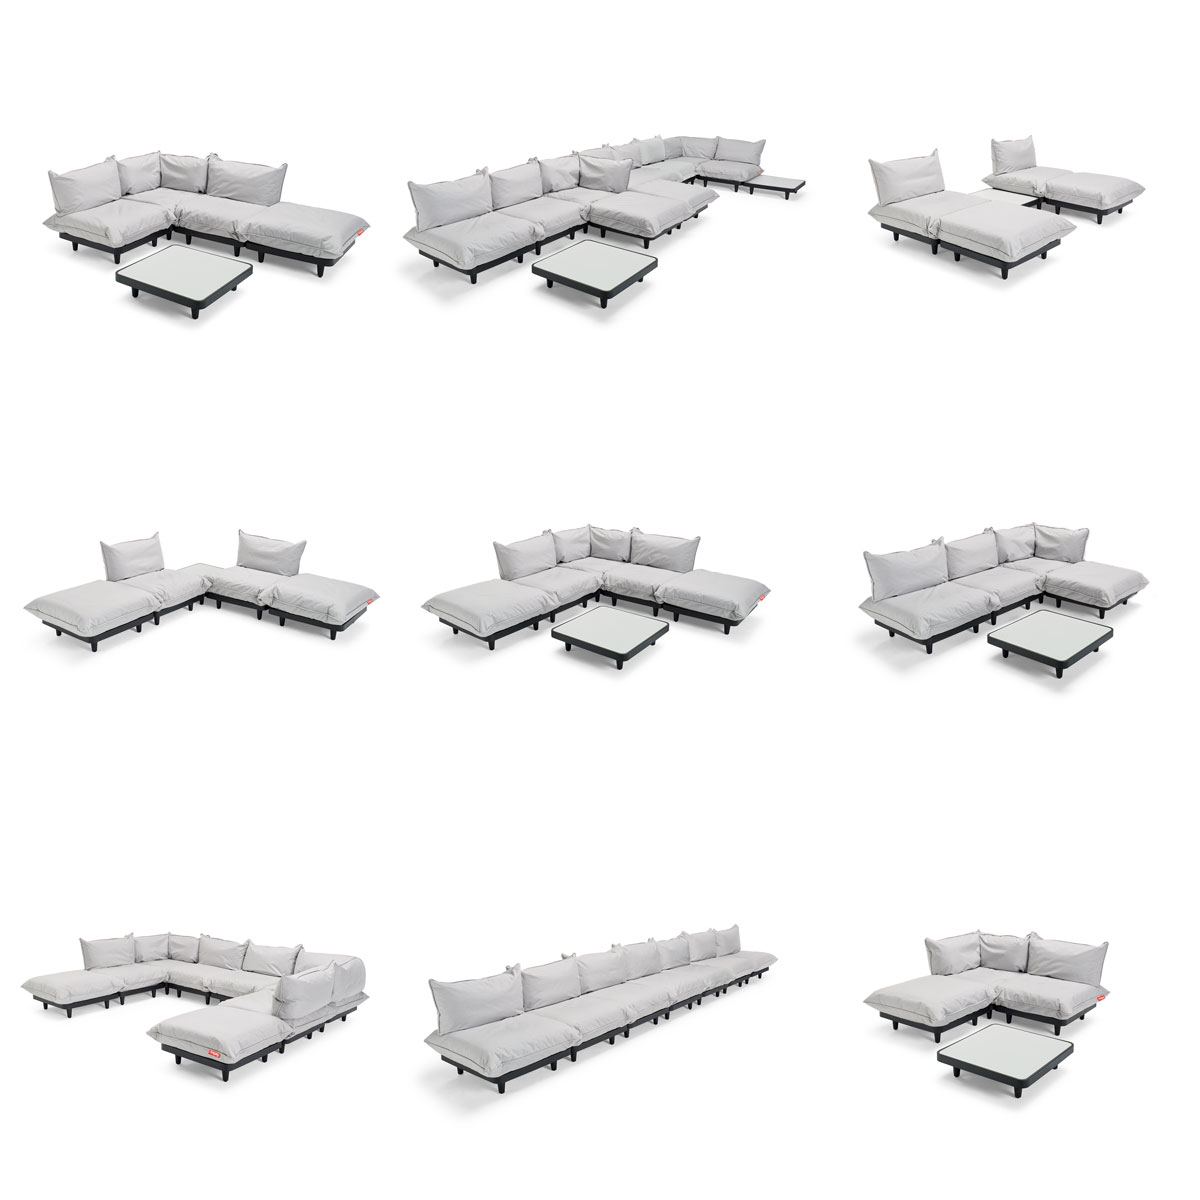 Verschillende modellen loungesets